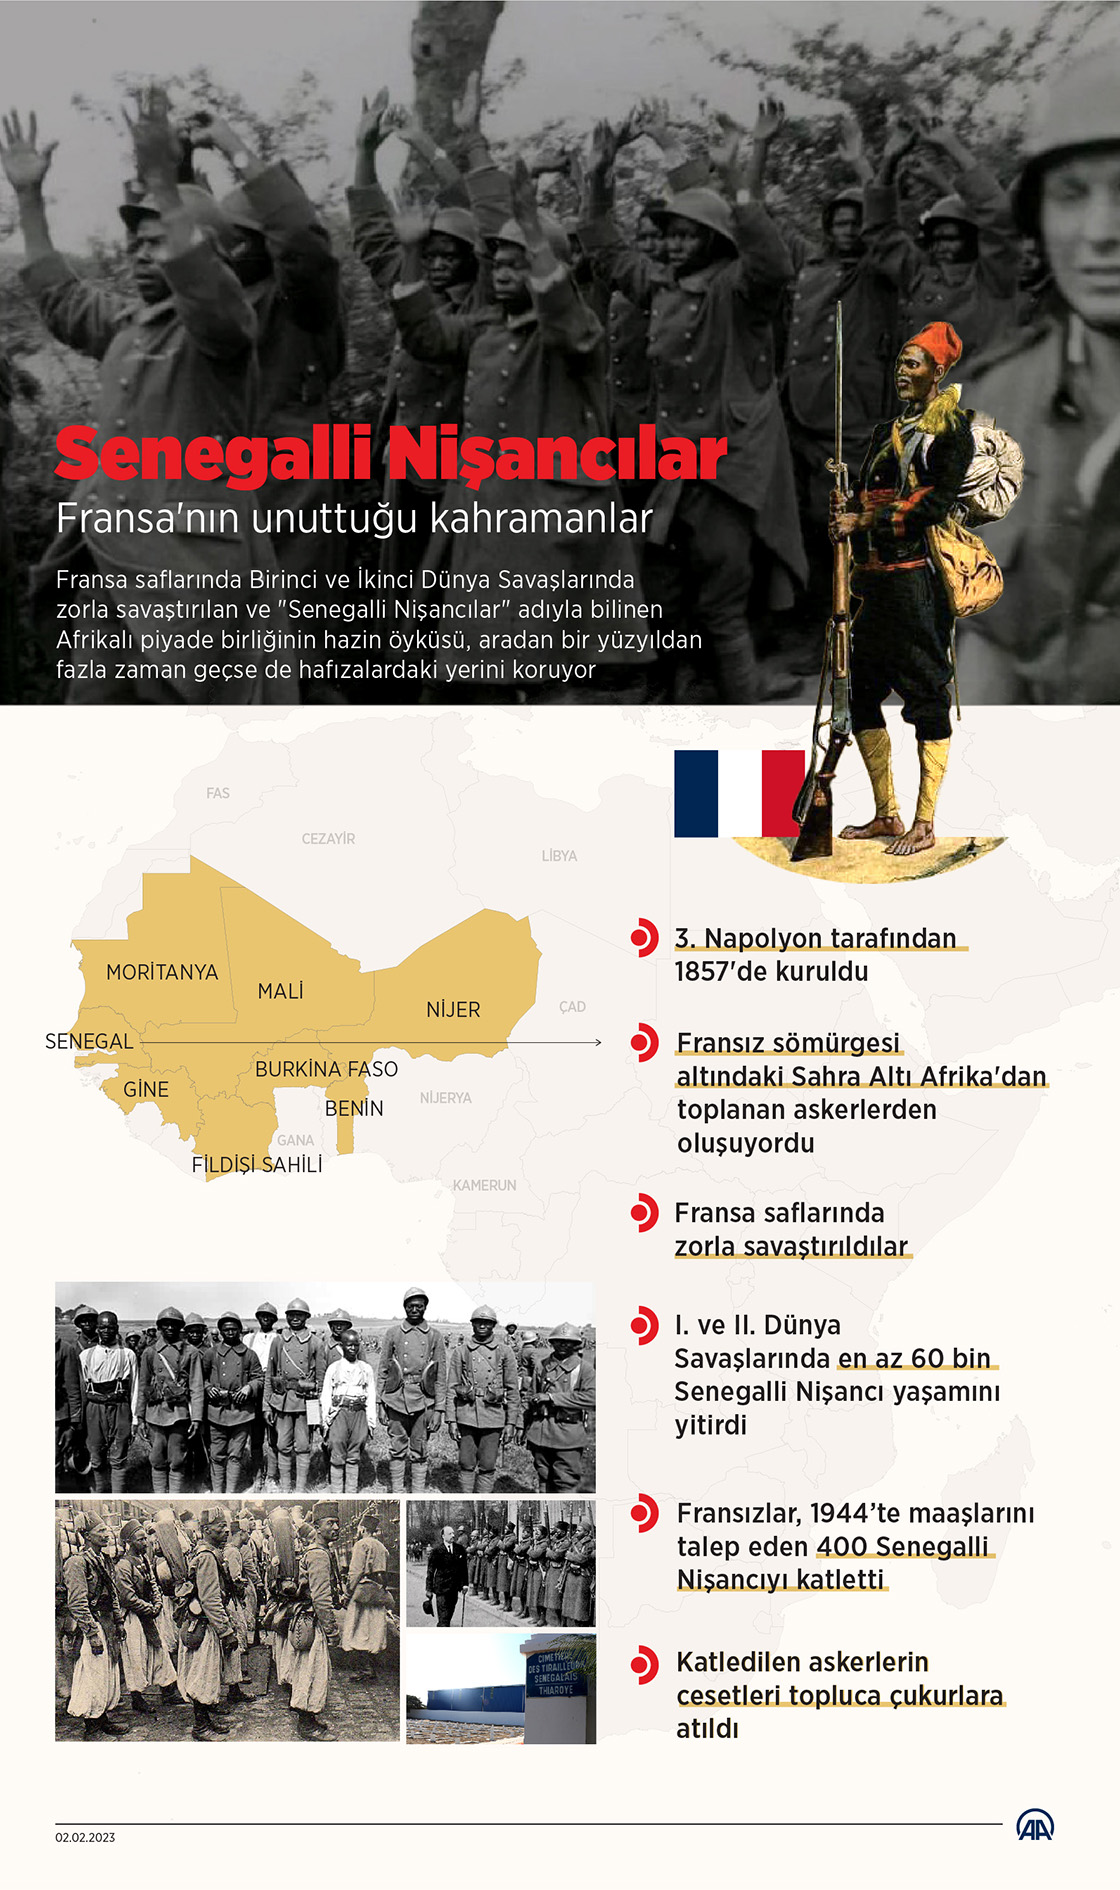 Fransa'nın unuttuğu kahramanlar: Senegalli Nişancılar